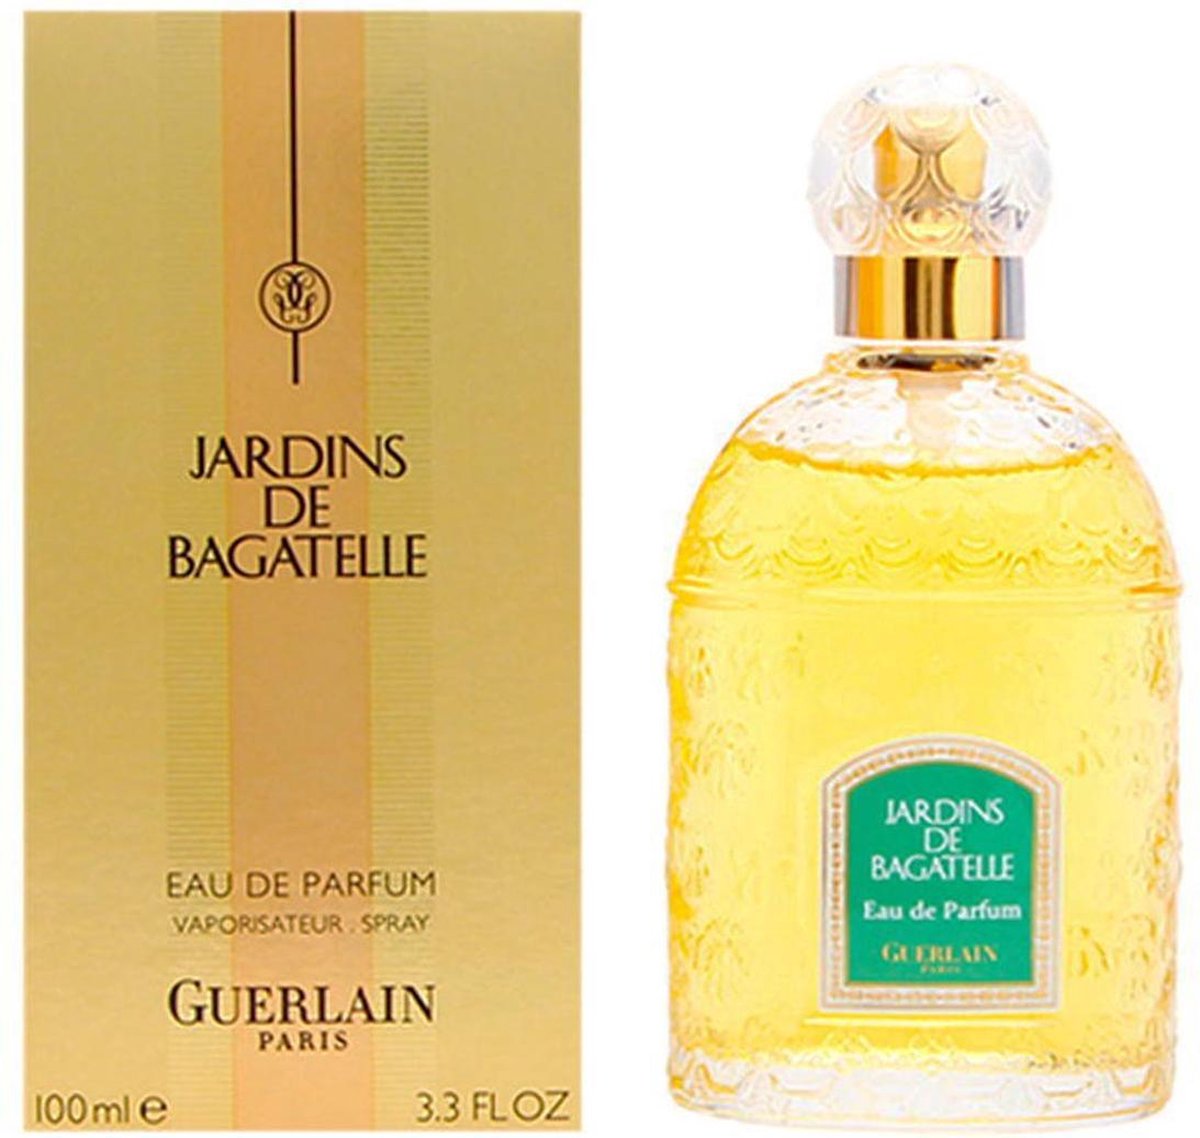 Guerlain Jardins De Bagatelle - 100ml - Eau de parfum - Guerlain